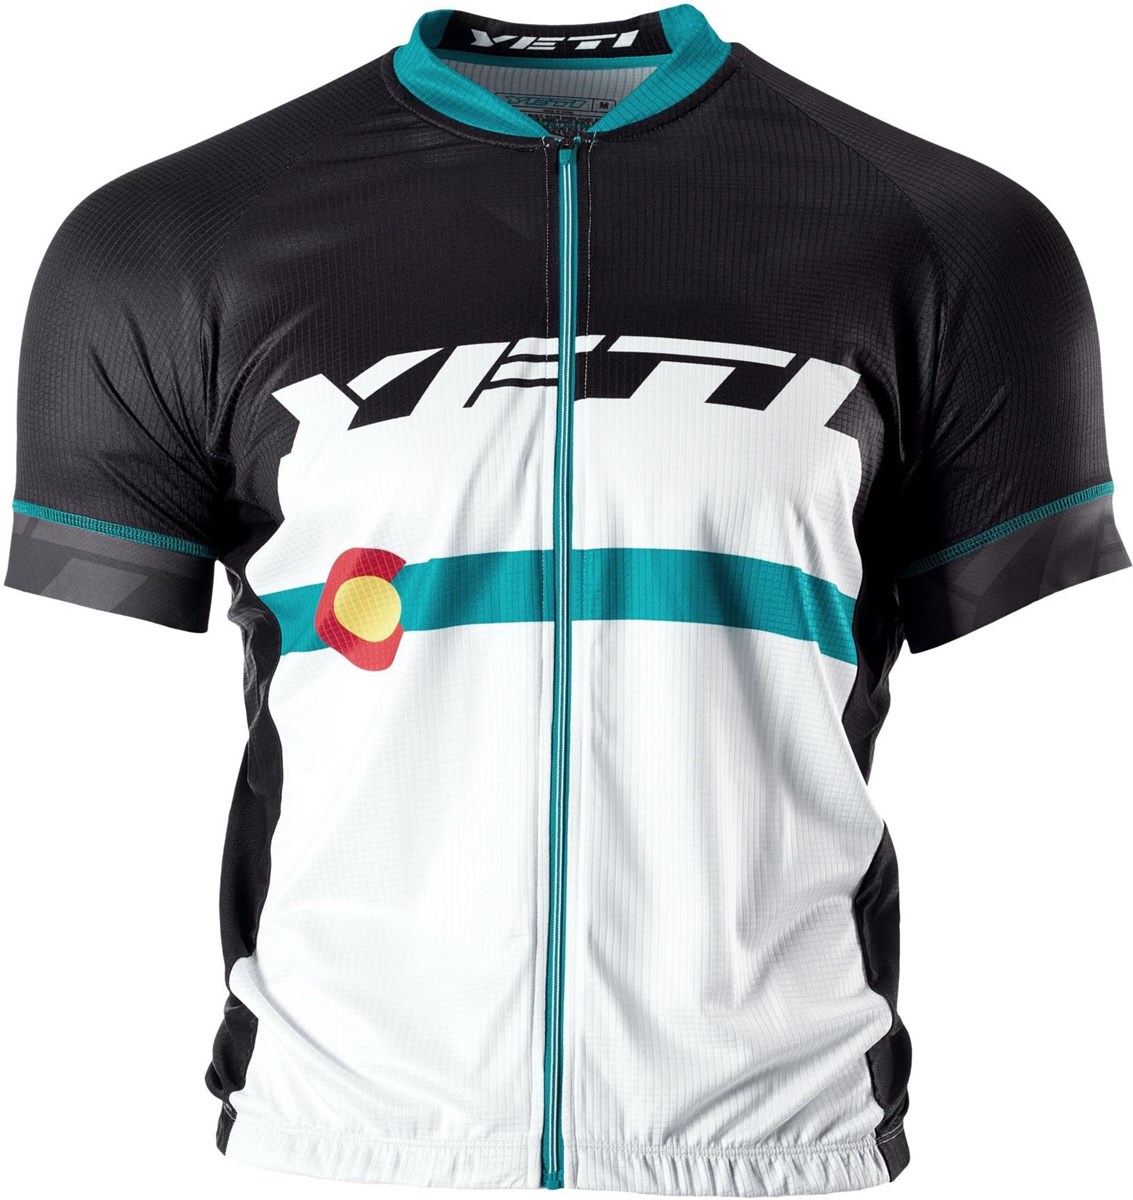 Yeti Ironton XC Short Sleeve Jersey product image